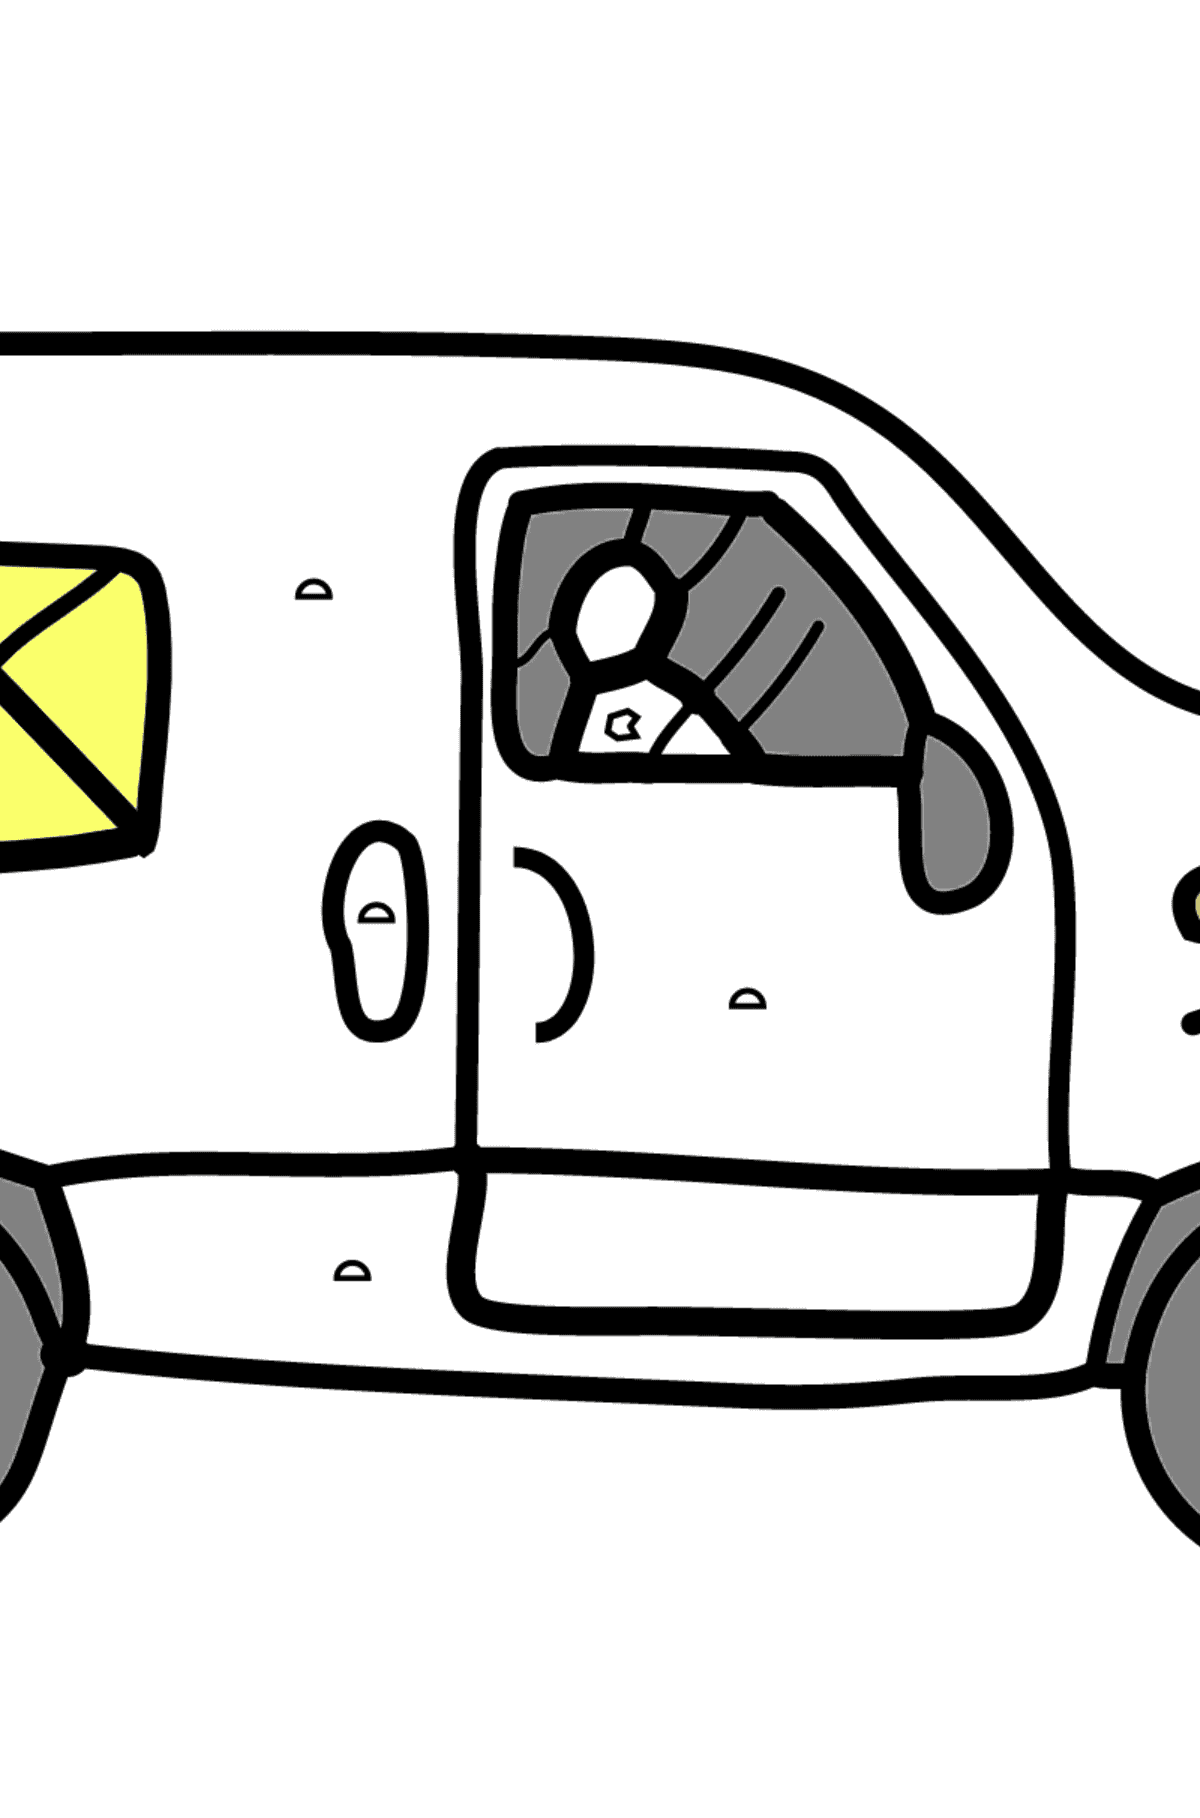 Bild von Auto zum Ausmalen - Ein Wagen transportiert Post - malen nach Geometrischen Formen für Kinder